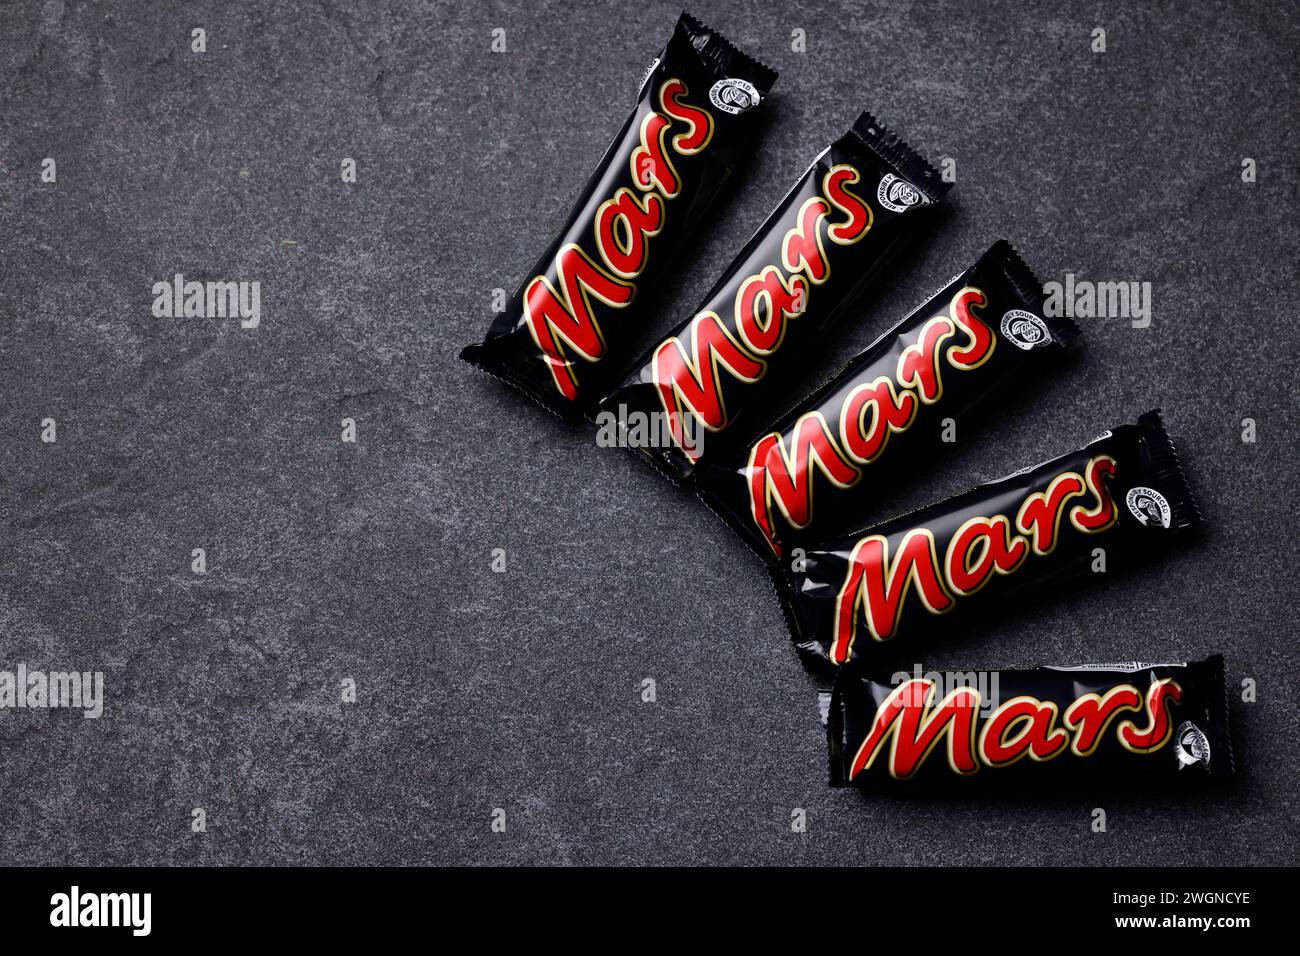 Ein Mars-Schokoriegel liegt auf einer Steinplatte. Mars ist ein von Mars Incorporated hergestellter mit Schokolade überzogener Karamellriegel. Er besteht aus Candycreme mit einer darüber liegenden Schicht Karamell, umgeben von Milchschokolade. Nach einem längeren Streit stehen wohl bald wieder Mars-Produkte in den Regalen der Supermarktkette Edeka. Themenbild, Symbolbild Köln, 06.02.2024 NRW Deutschland *** A Mars chocolate bar lies on a stone slab Mars is a chocolate-coated caramel bar produced by Mars Incorporated It consists of candy cream with a layer of caramel on top, surrounded by milk Stock Photo